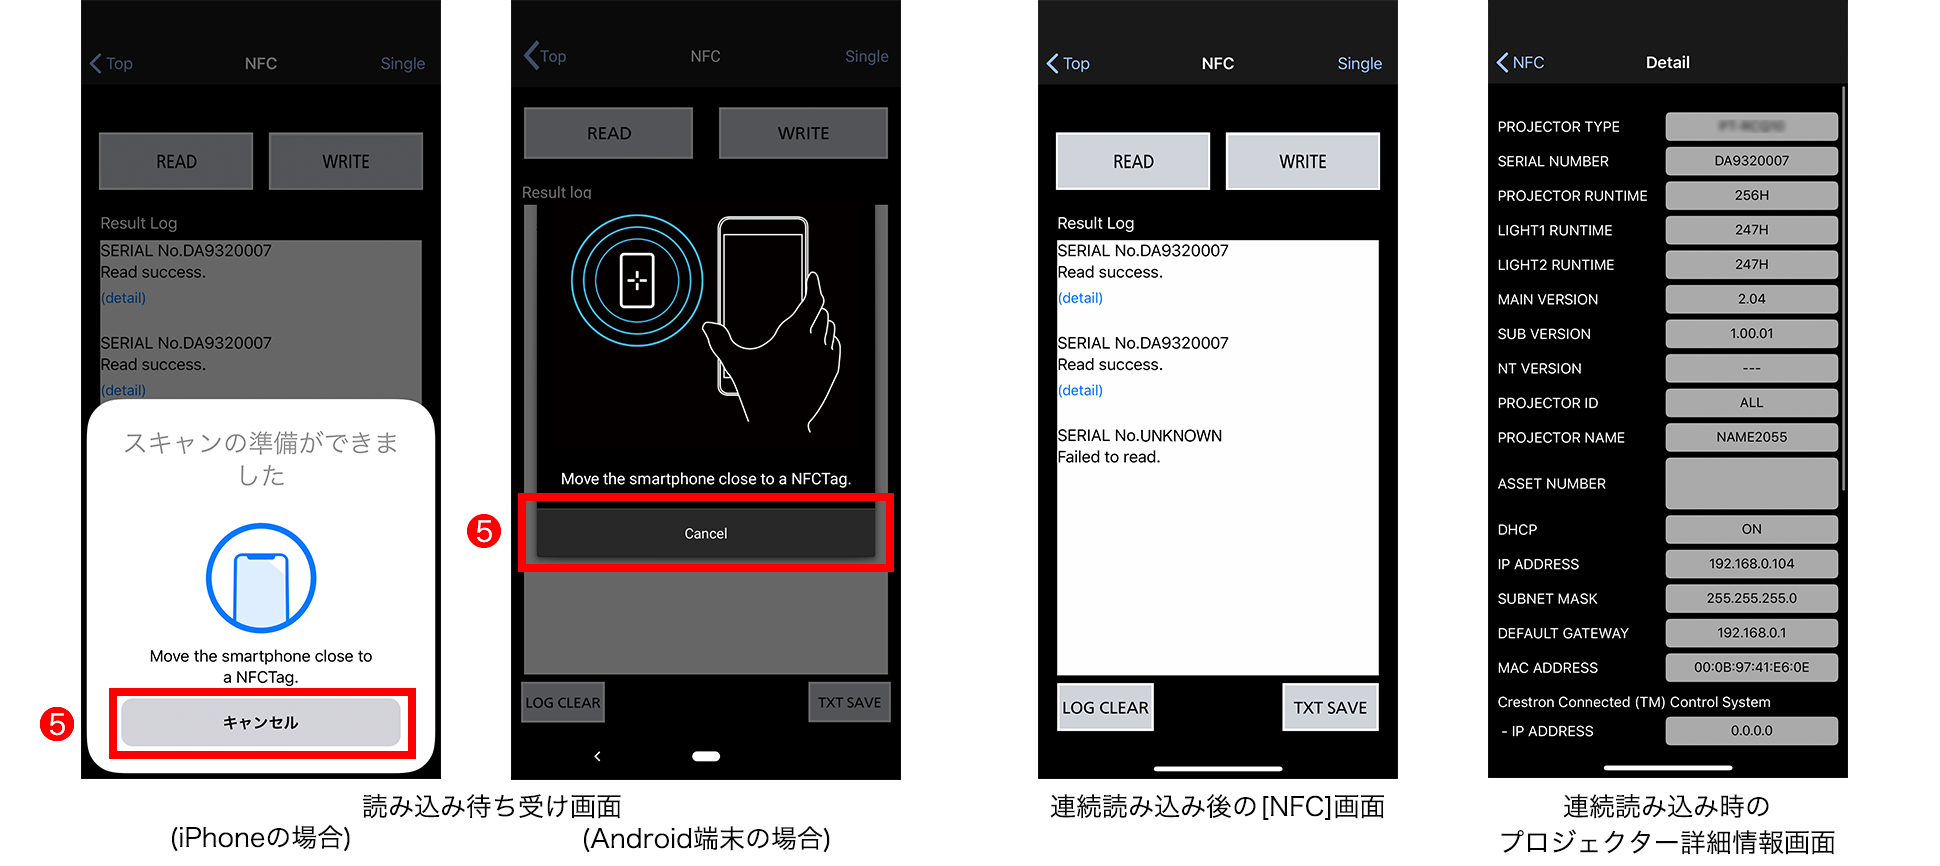 読み込み待ち受け画面(iPhoneの場合/Android端末の場合)、連続読み込み後の[NFC]画面、連続読み込み時のプロジェクター詳細情報画面